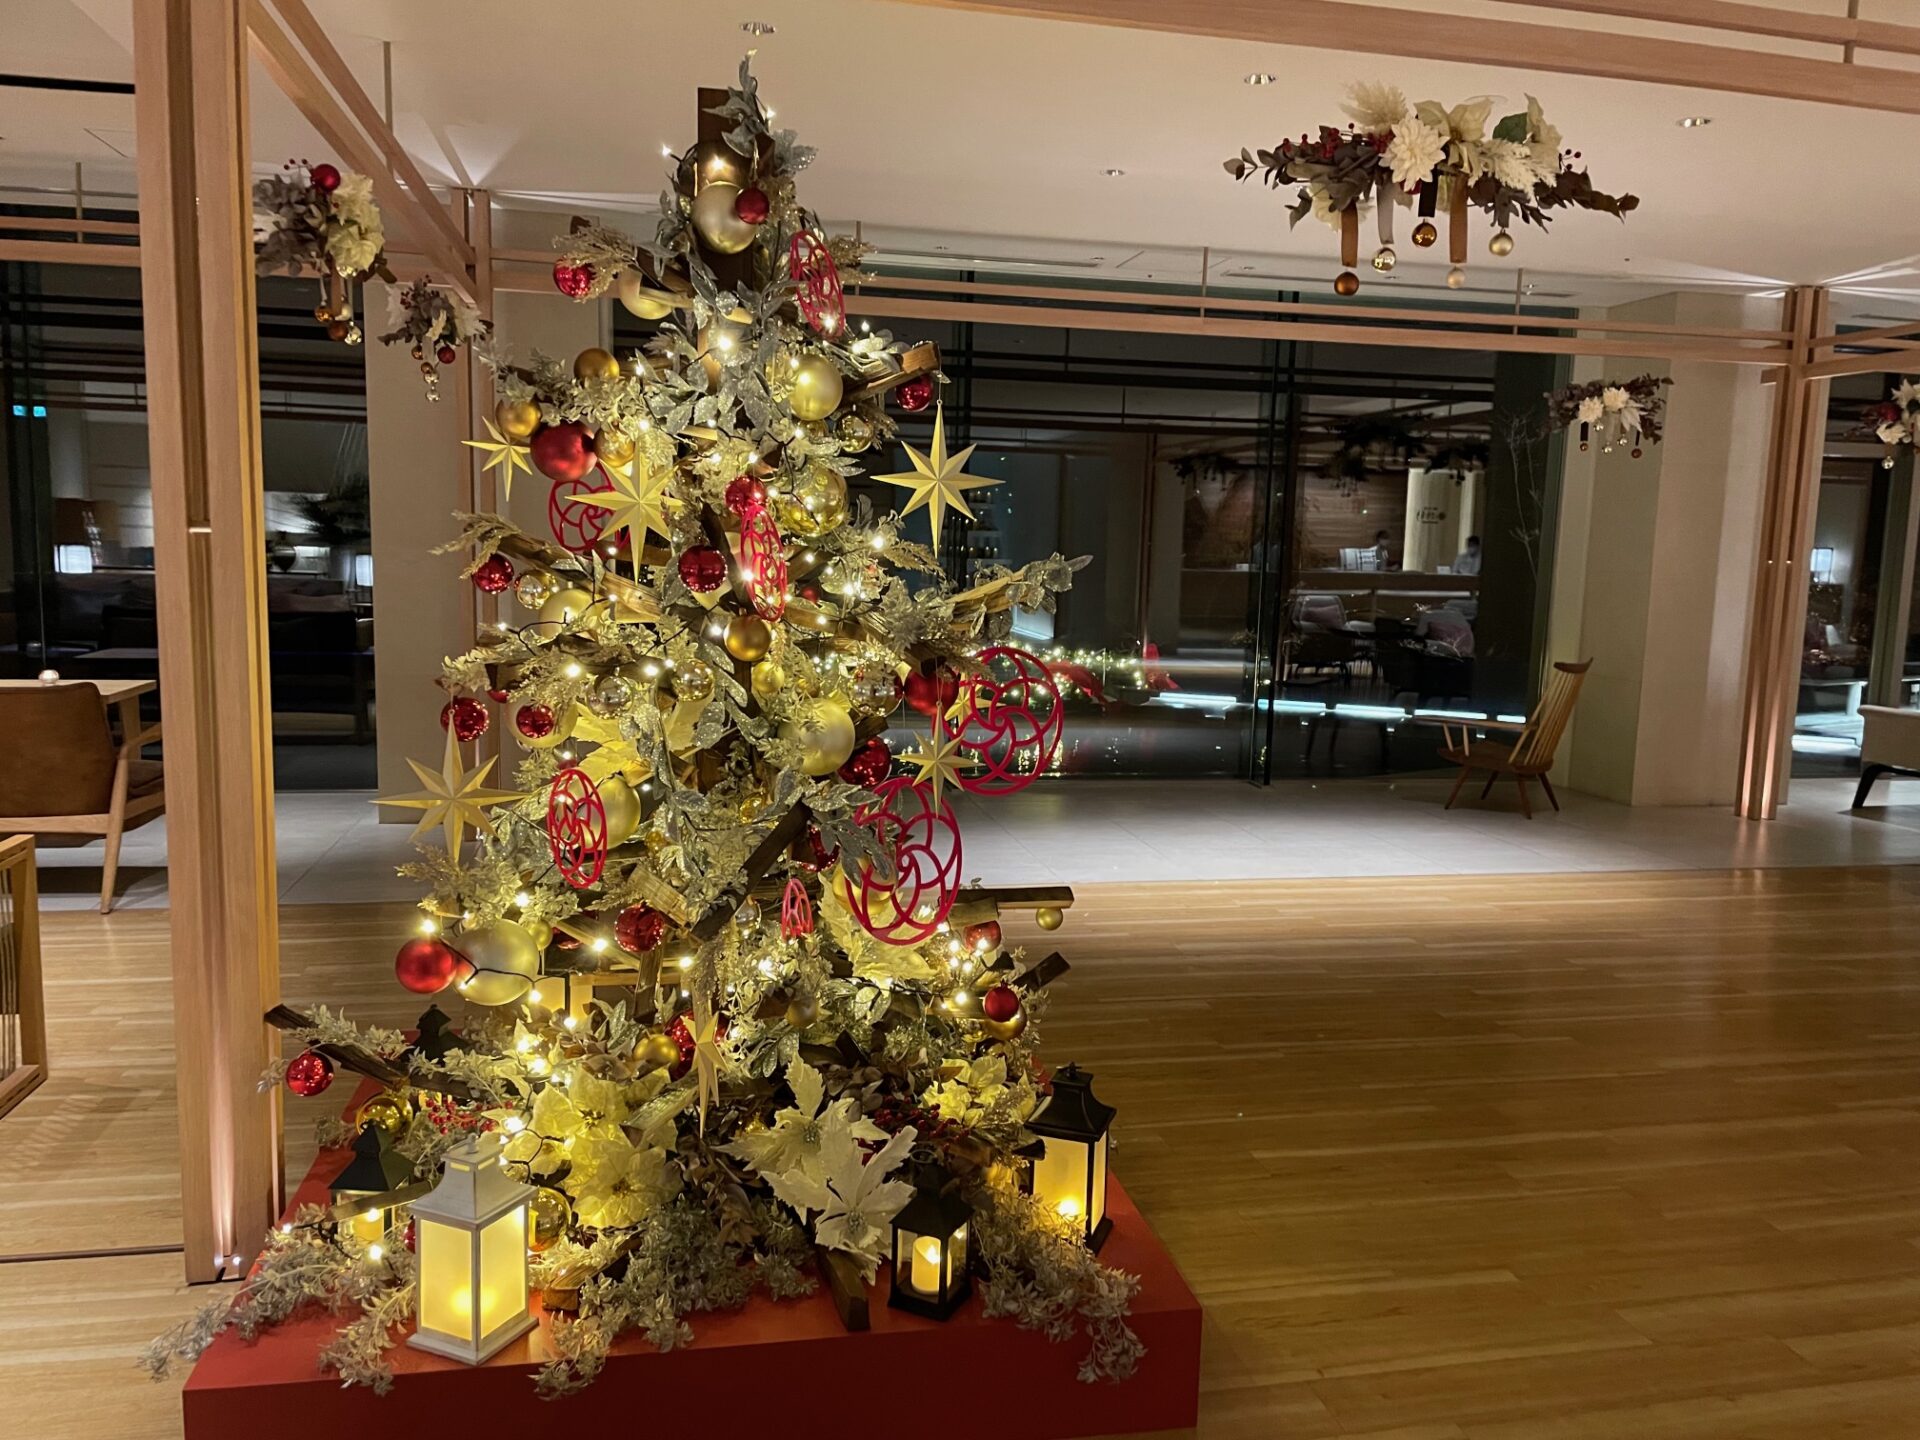 はなをりのクリスマス クリスマスリース ツリー 観光 イベント情報 箱根 芦ノ湖のホテル 旅館なら 箱根 芦ノ湖 はなをり 公式